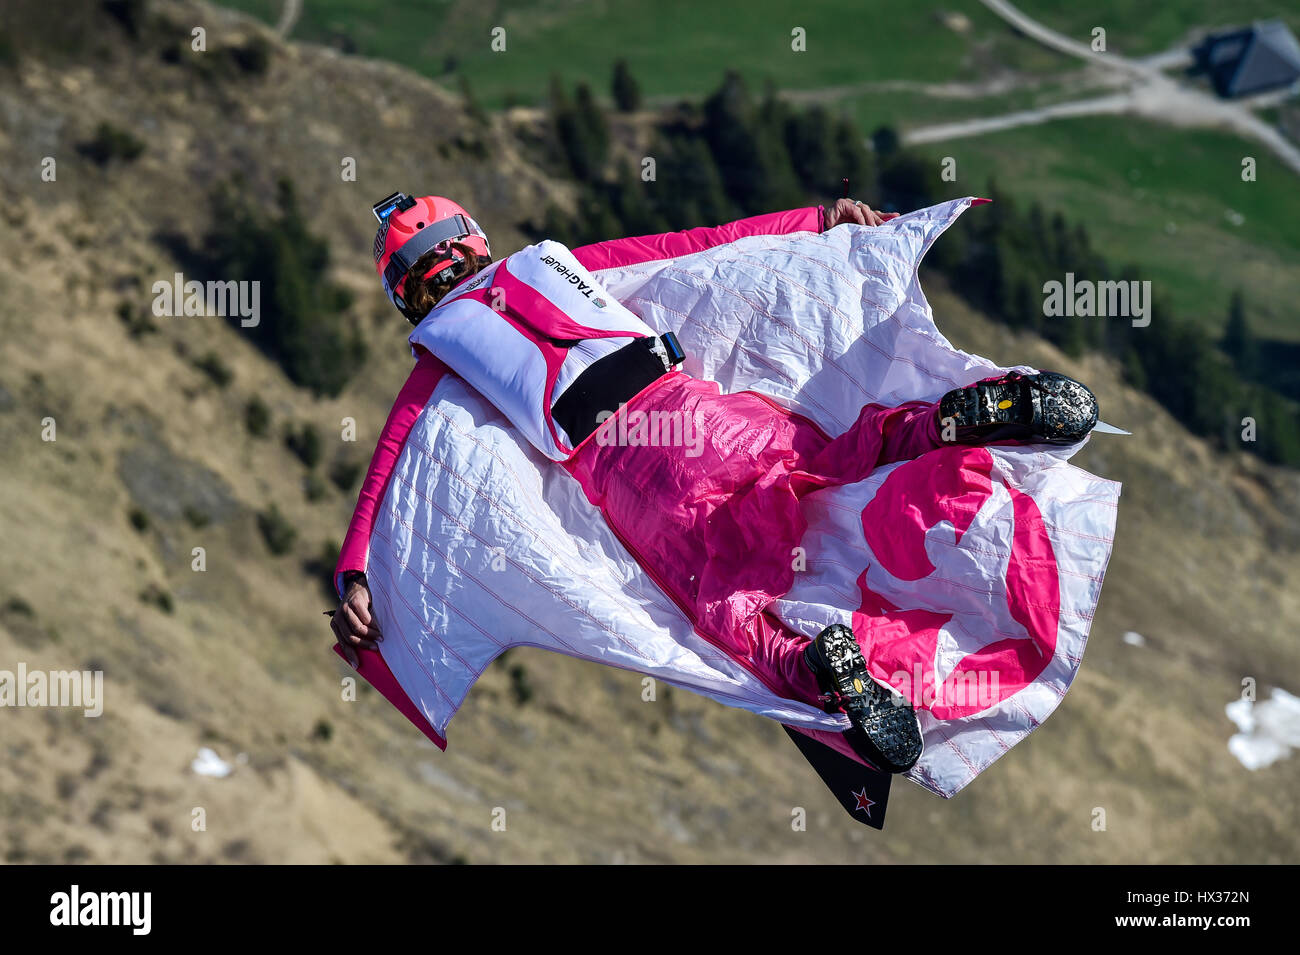 Ponticello di base volare con wingsuit in aria, salto dal Monte Pilatus, Lucerna, Svizzera Foto Stock